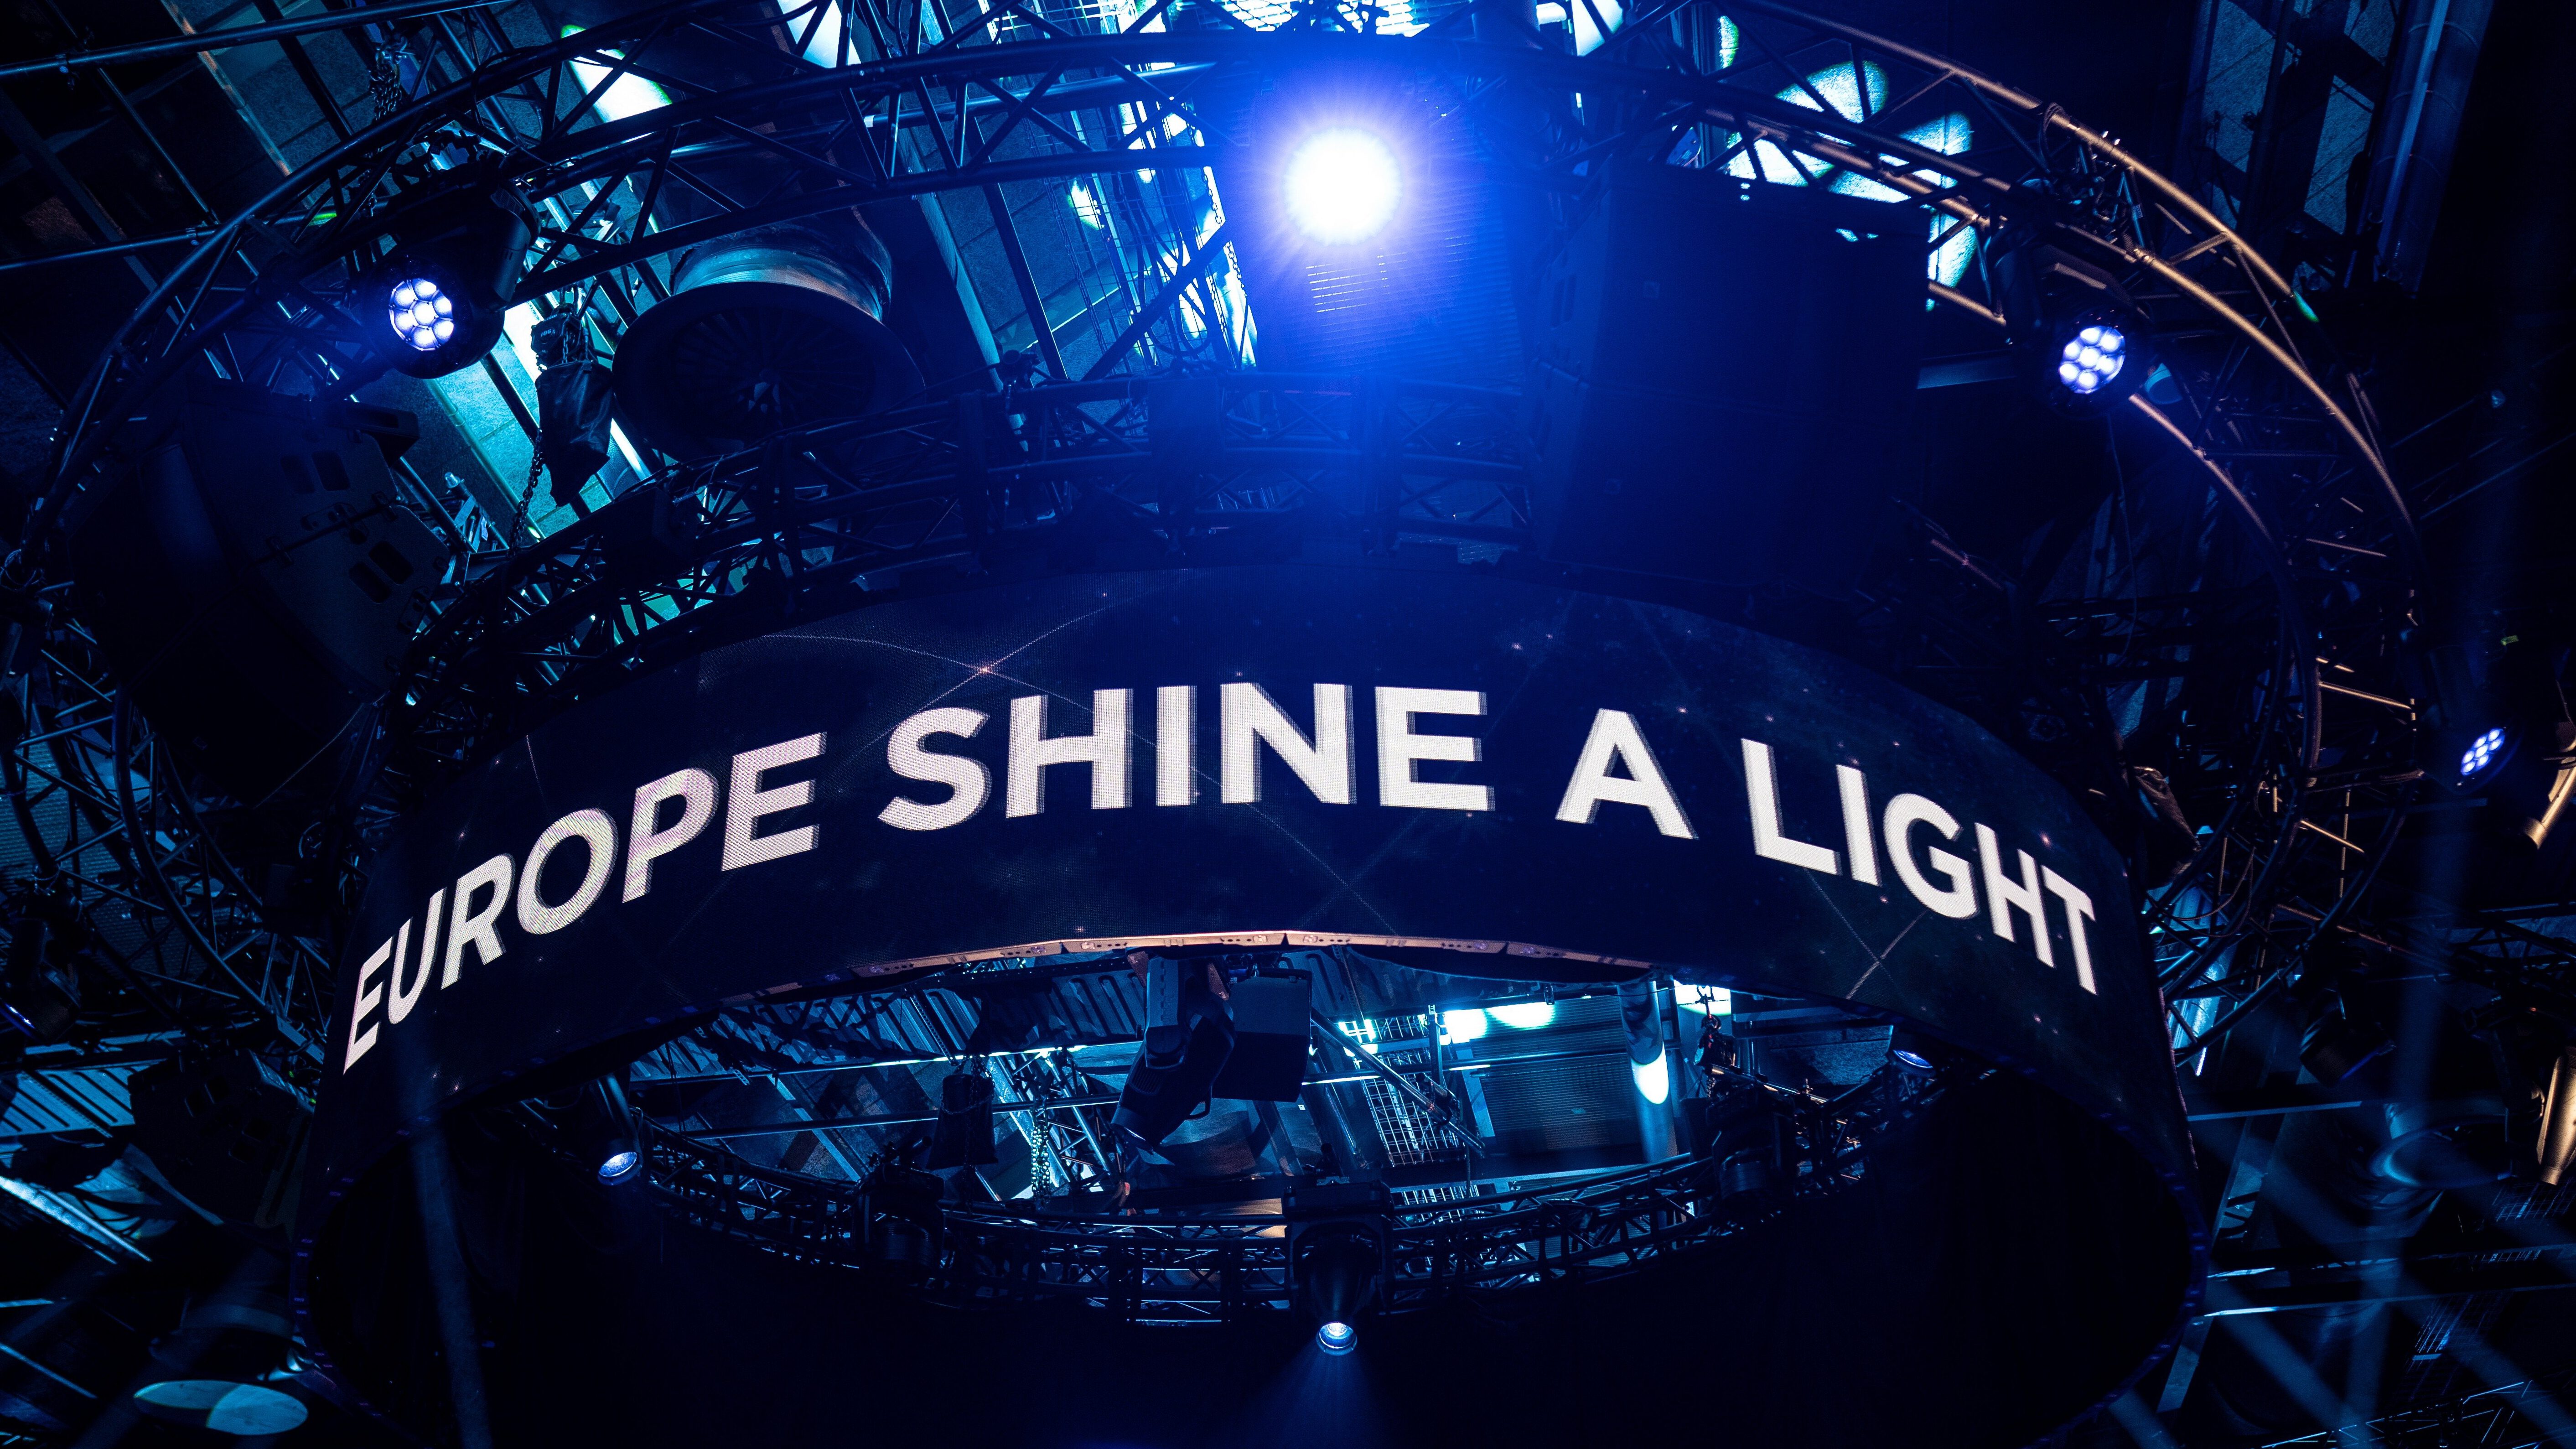 A Eurovision - Europe Shine A Light stúdiójának részlete a hollandiai Hilversumban - Kris Pouw (EBU) fotója